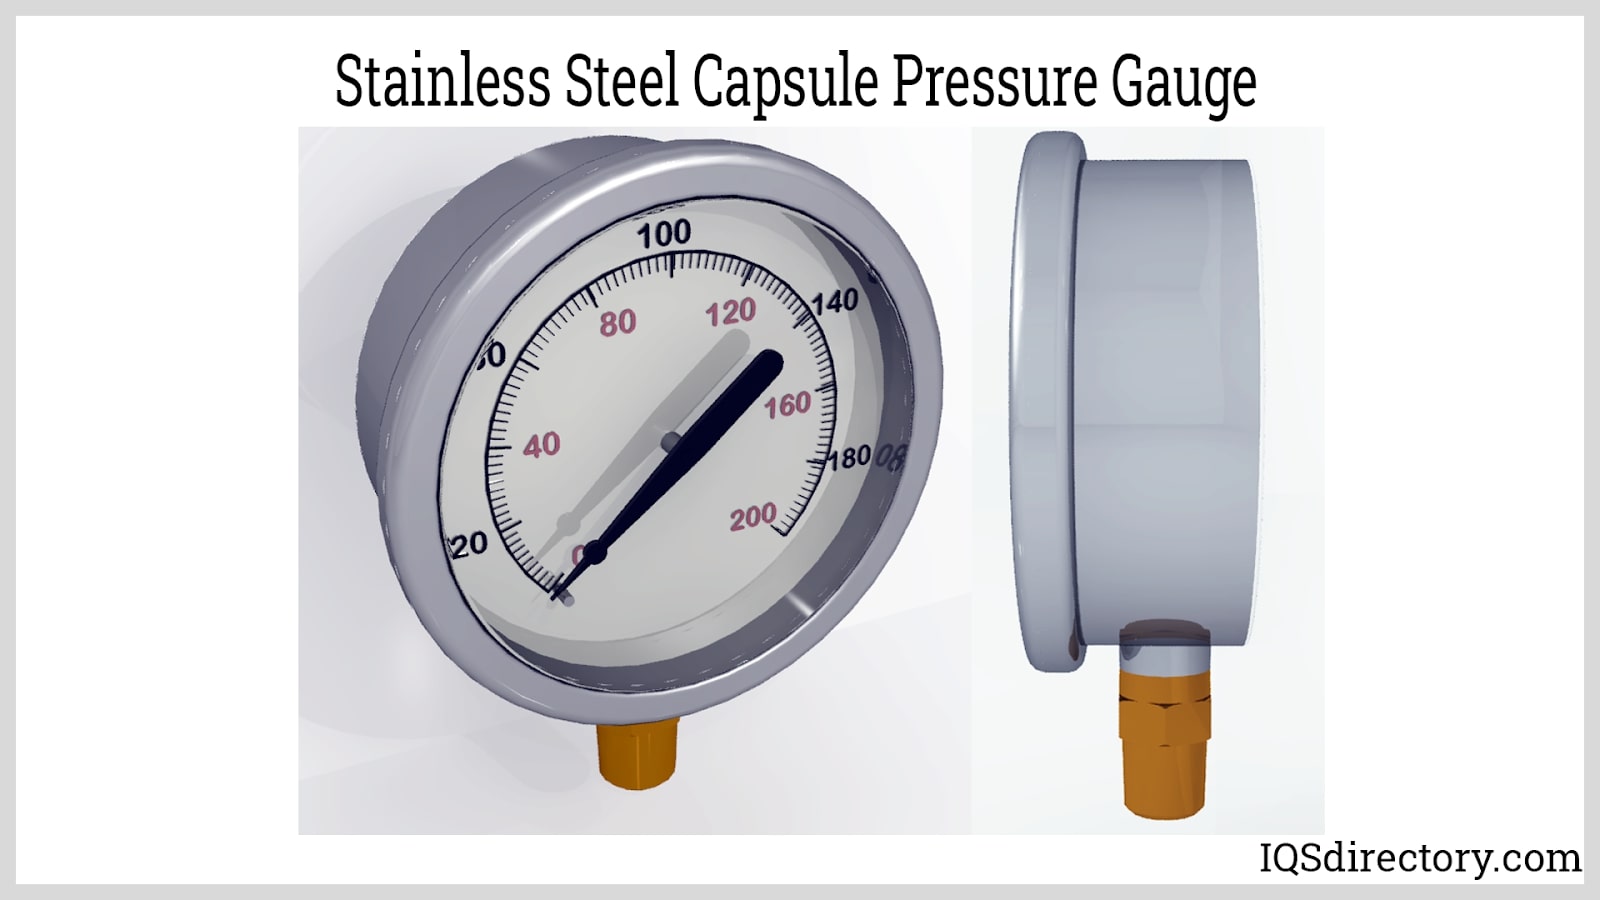 Stainless Steel Capsule Pressure Gauge